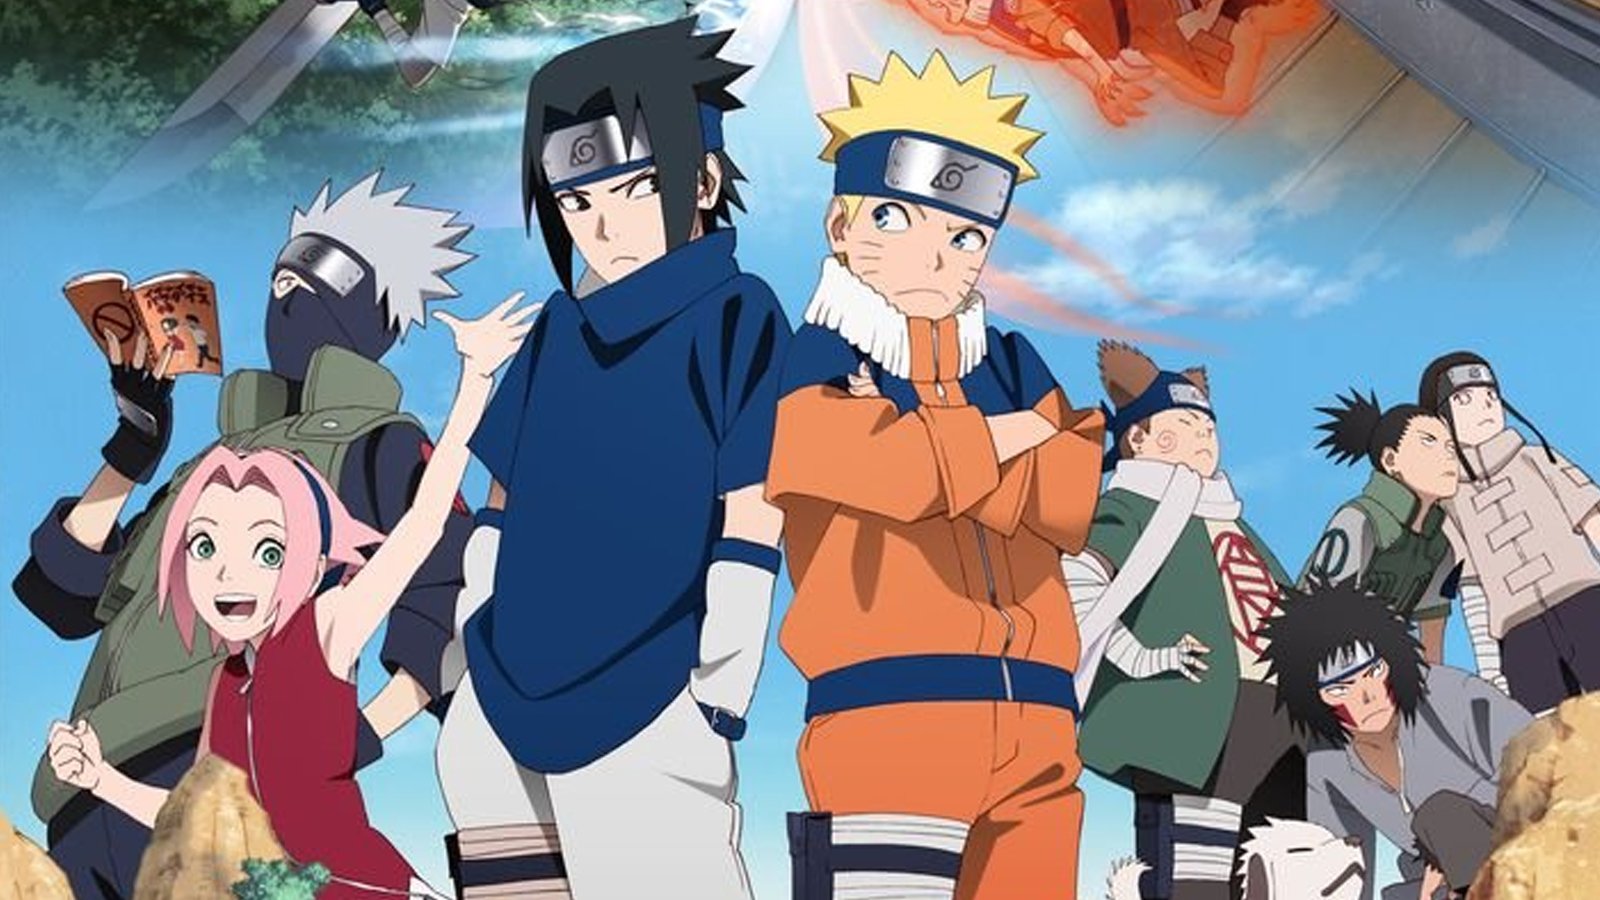 The Naruto cast including Naruto, Sasuke, Kakashi, Sakura, Kiba, Choji, Shikamaru, and Neji are all standng togehter.